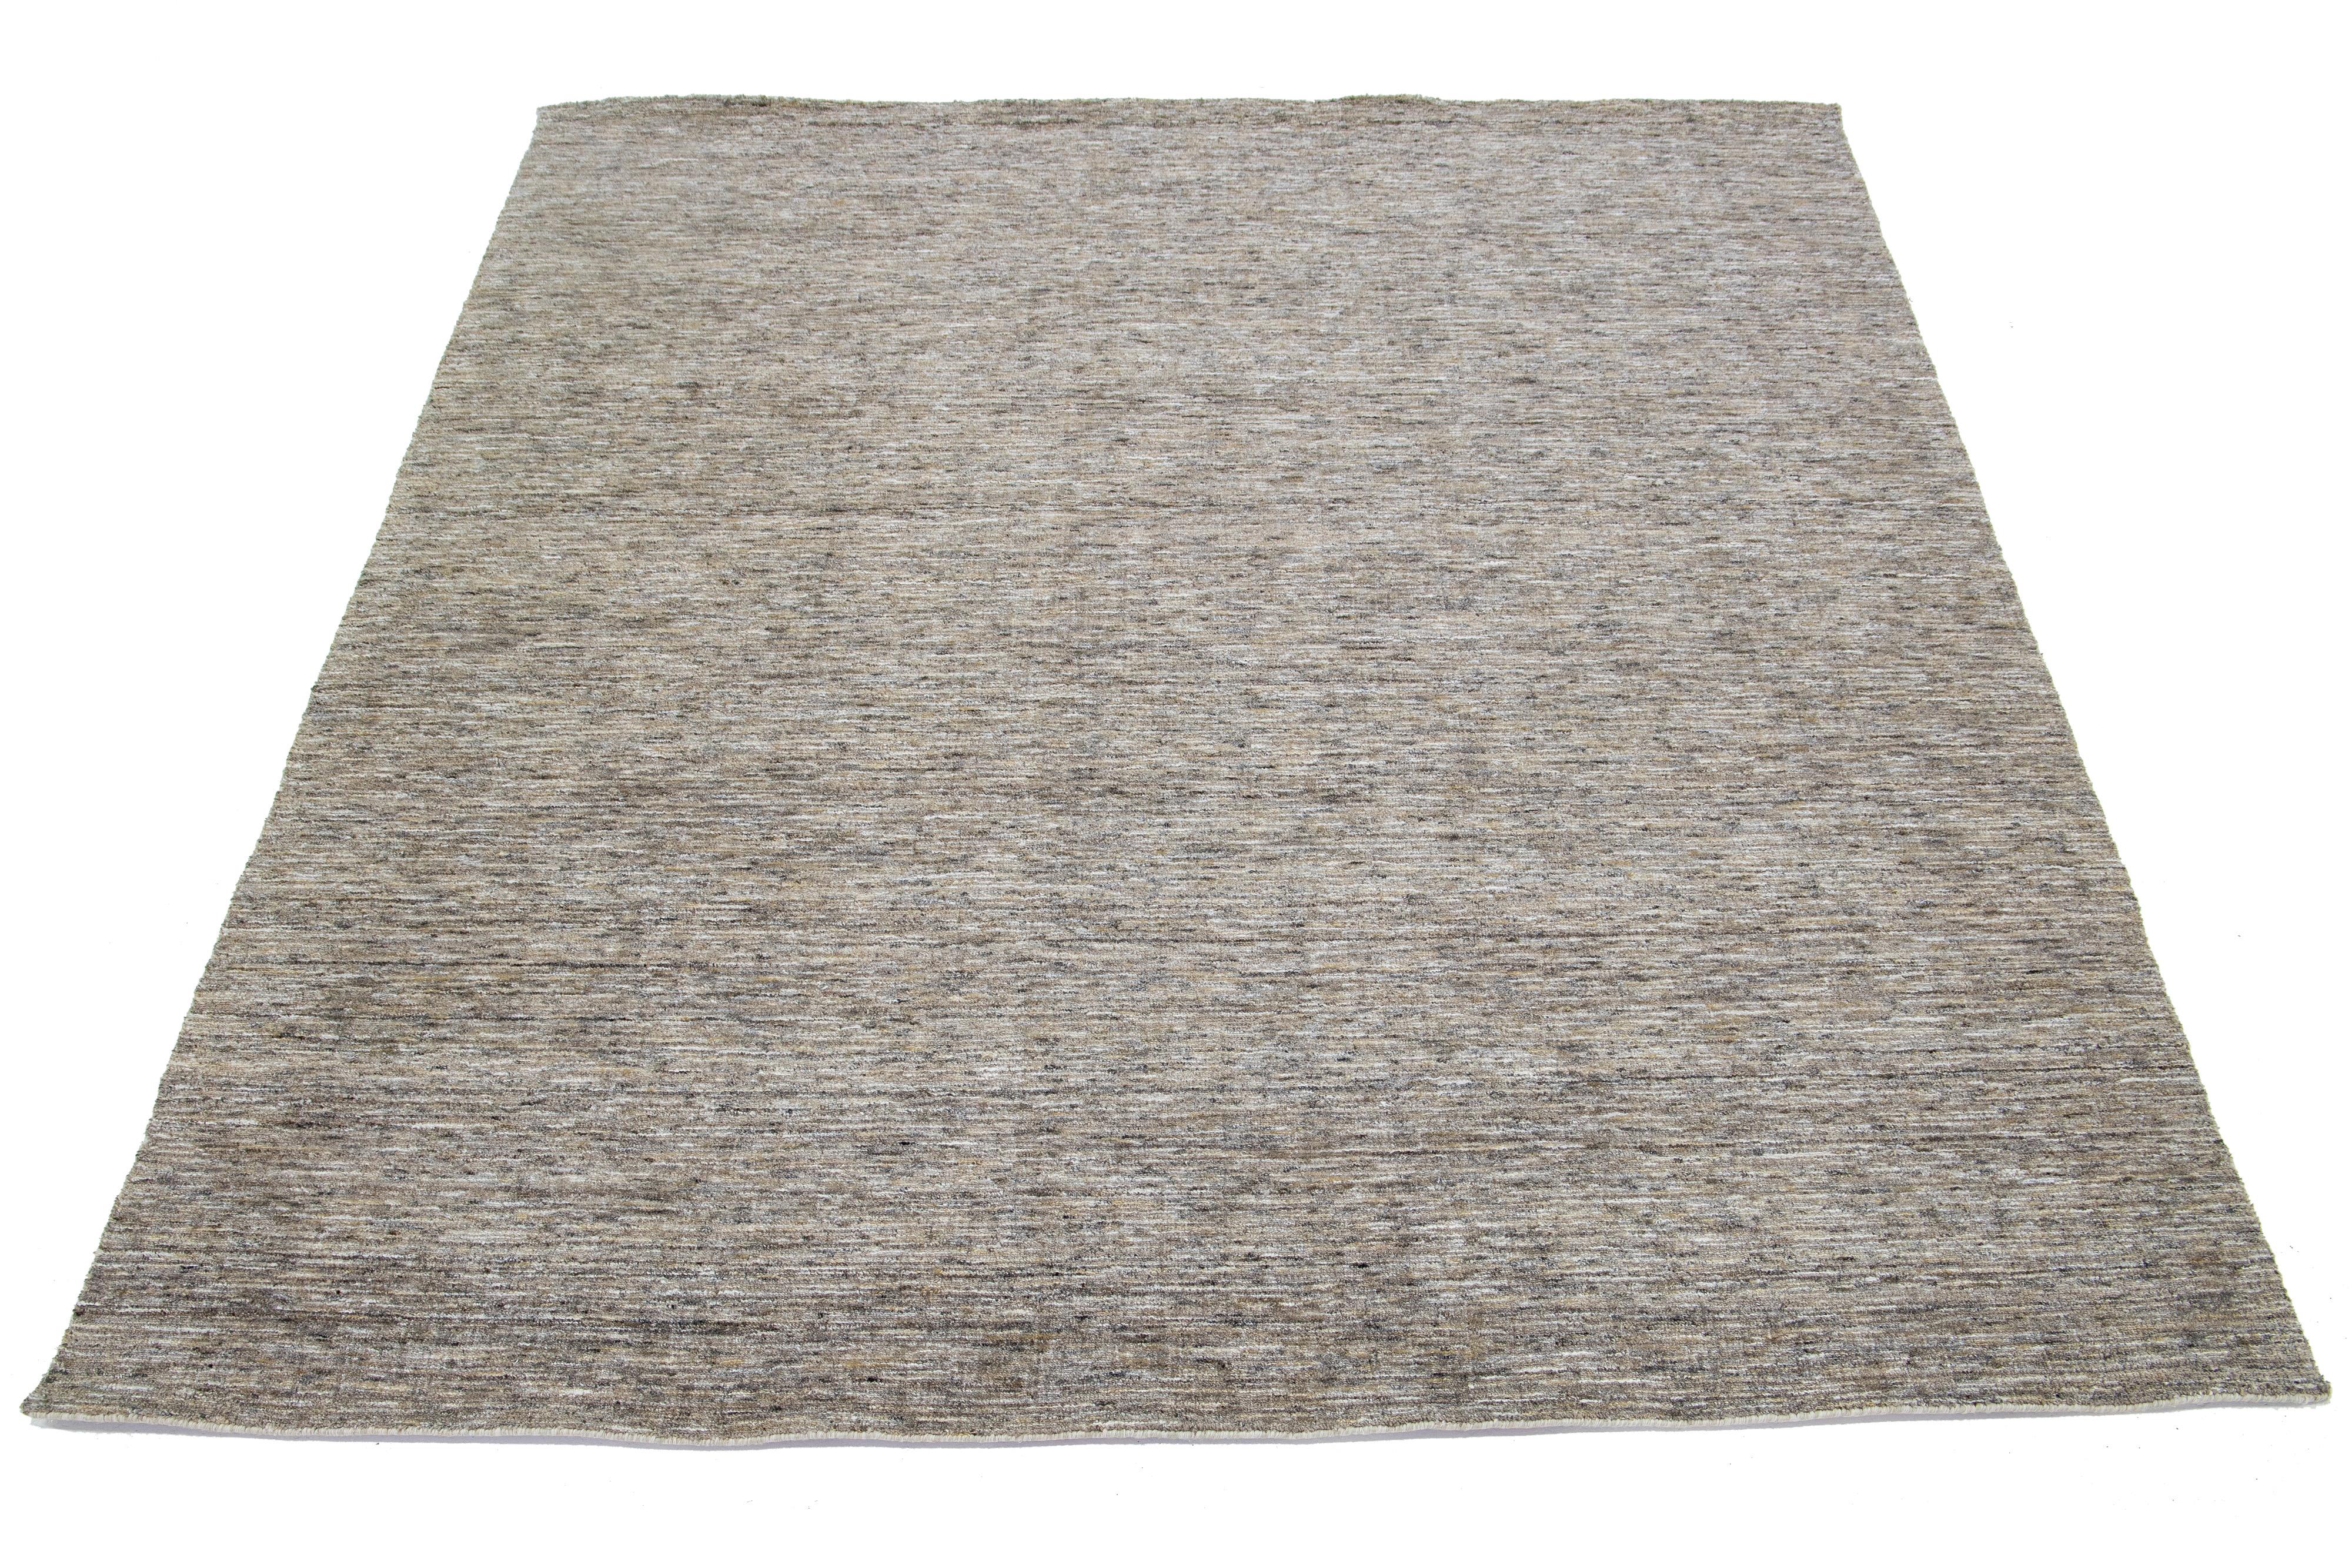 Ce magnifique tapis moderne en laine nouée à la main présente un champ de couleur taupe et un magnifique motif de texture Strié. Cette pièce est parfaite pour faire une déclaration, et sa texture luxueuse laissera une impression durable.

Ce tapis